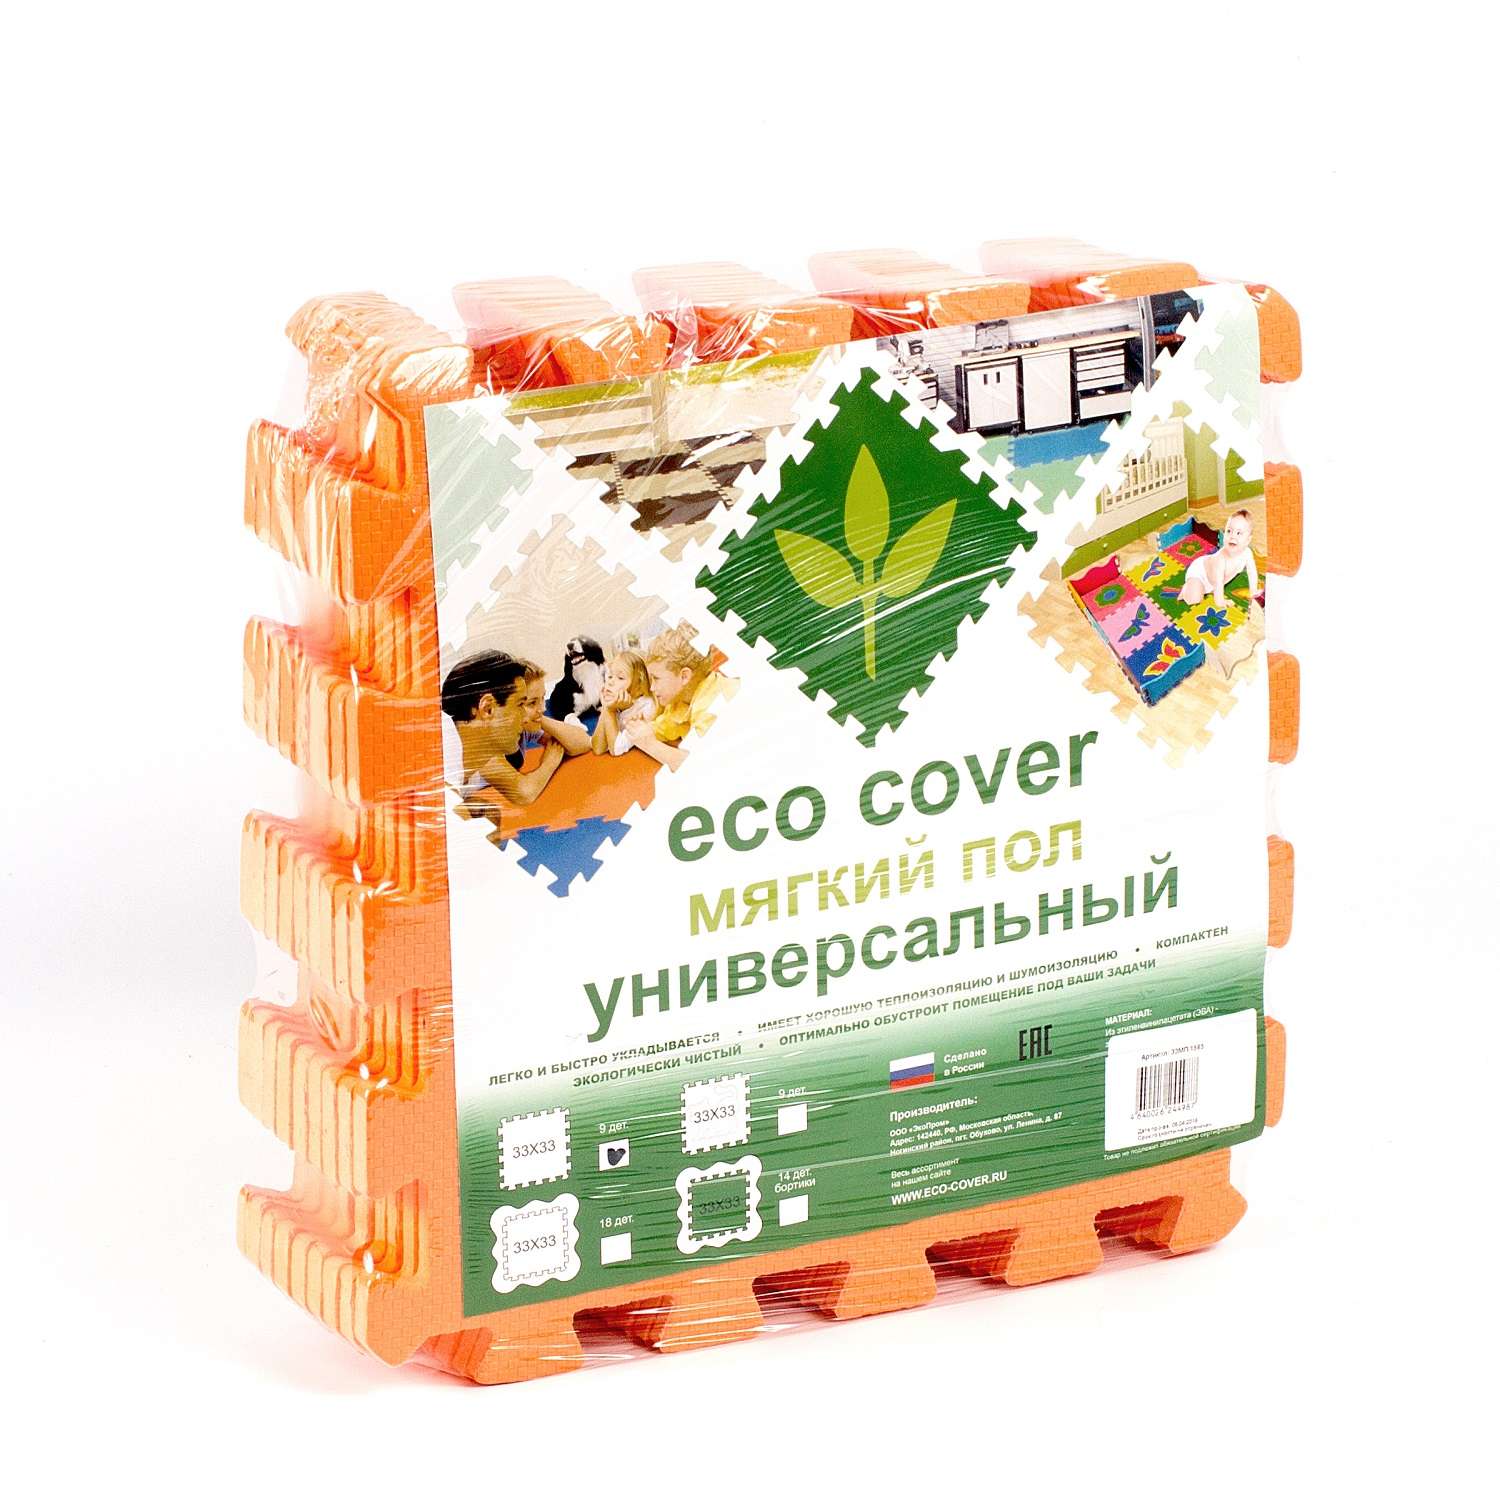 Развивающий детский коврик Eco cover игровой мягкий пол для ползания оранжевый 33х33 - фото 3